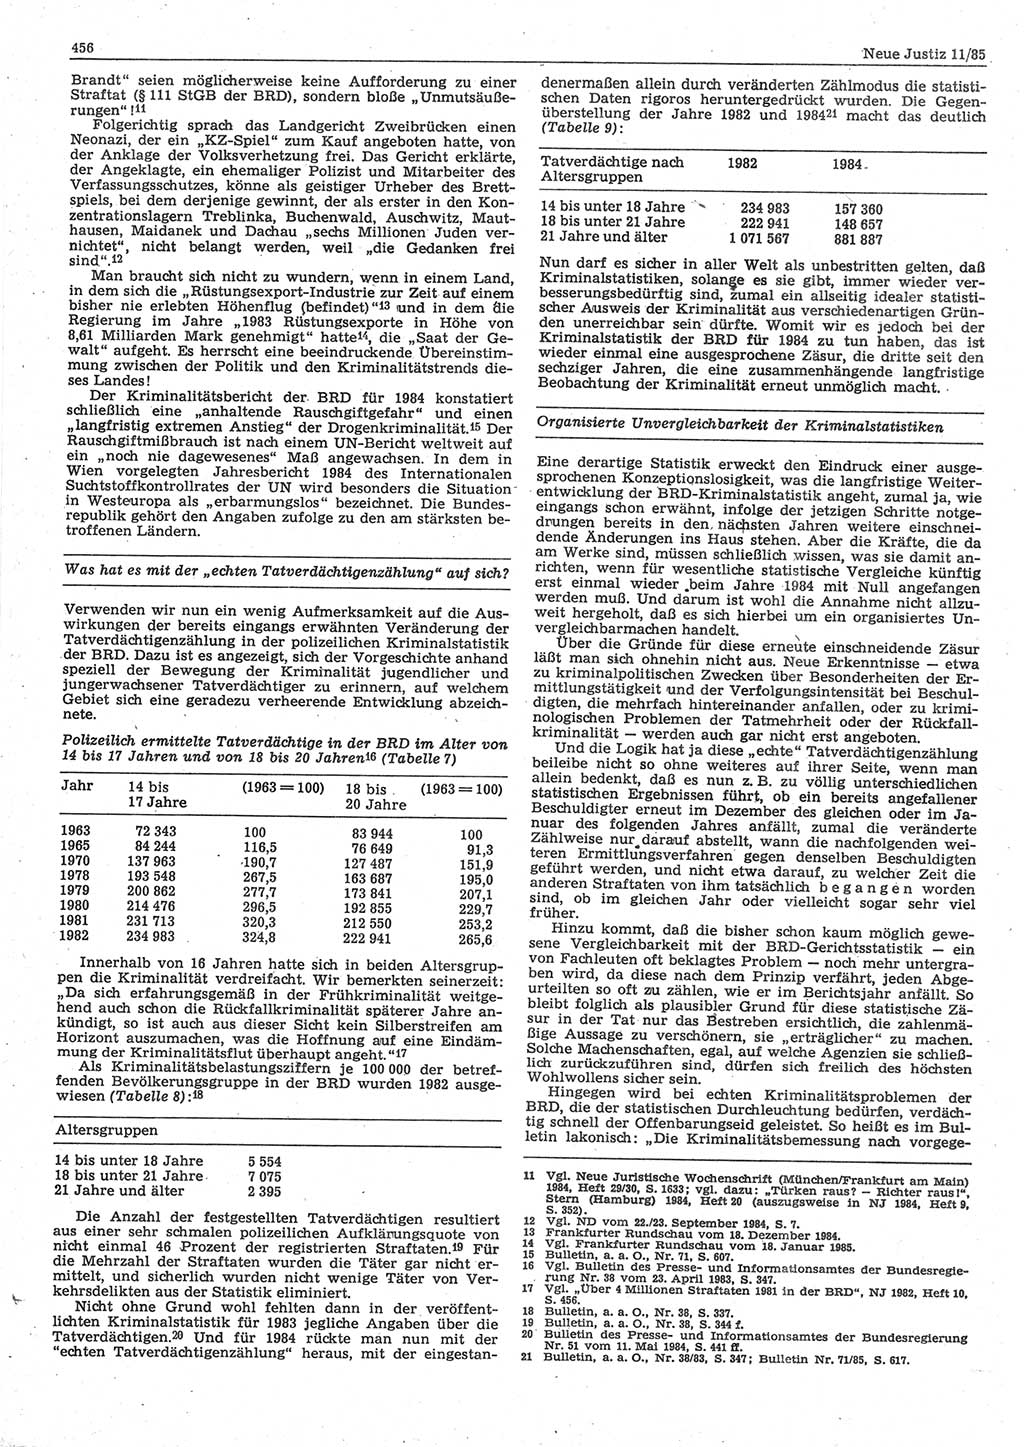 Neue Justiz (NJ), Zeitschrift für sozialistisches Recht und Gesetzlichkeit [Deutsche Demokratische Republik (DDR)], 39. Jahrgang 1985, Seite 456 (NJ DDR 1985, S. 456)